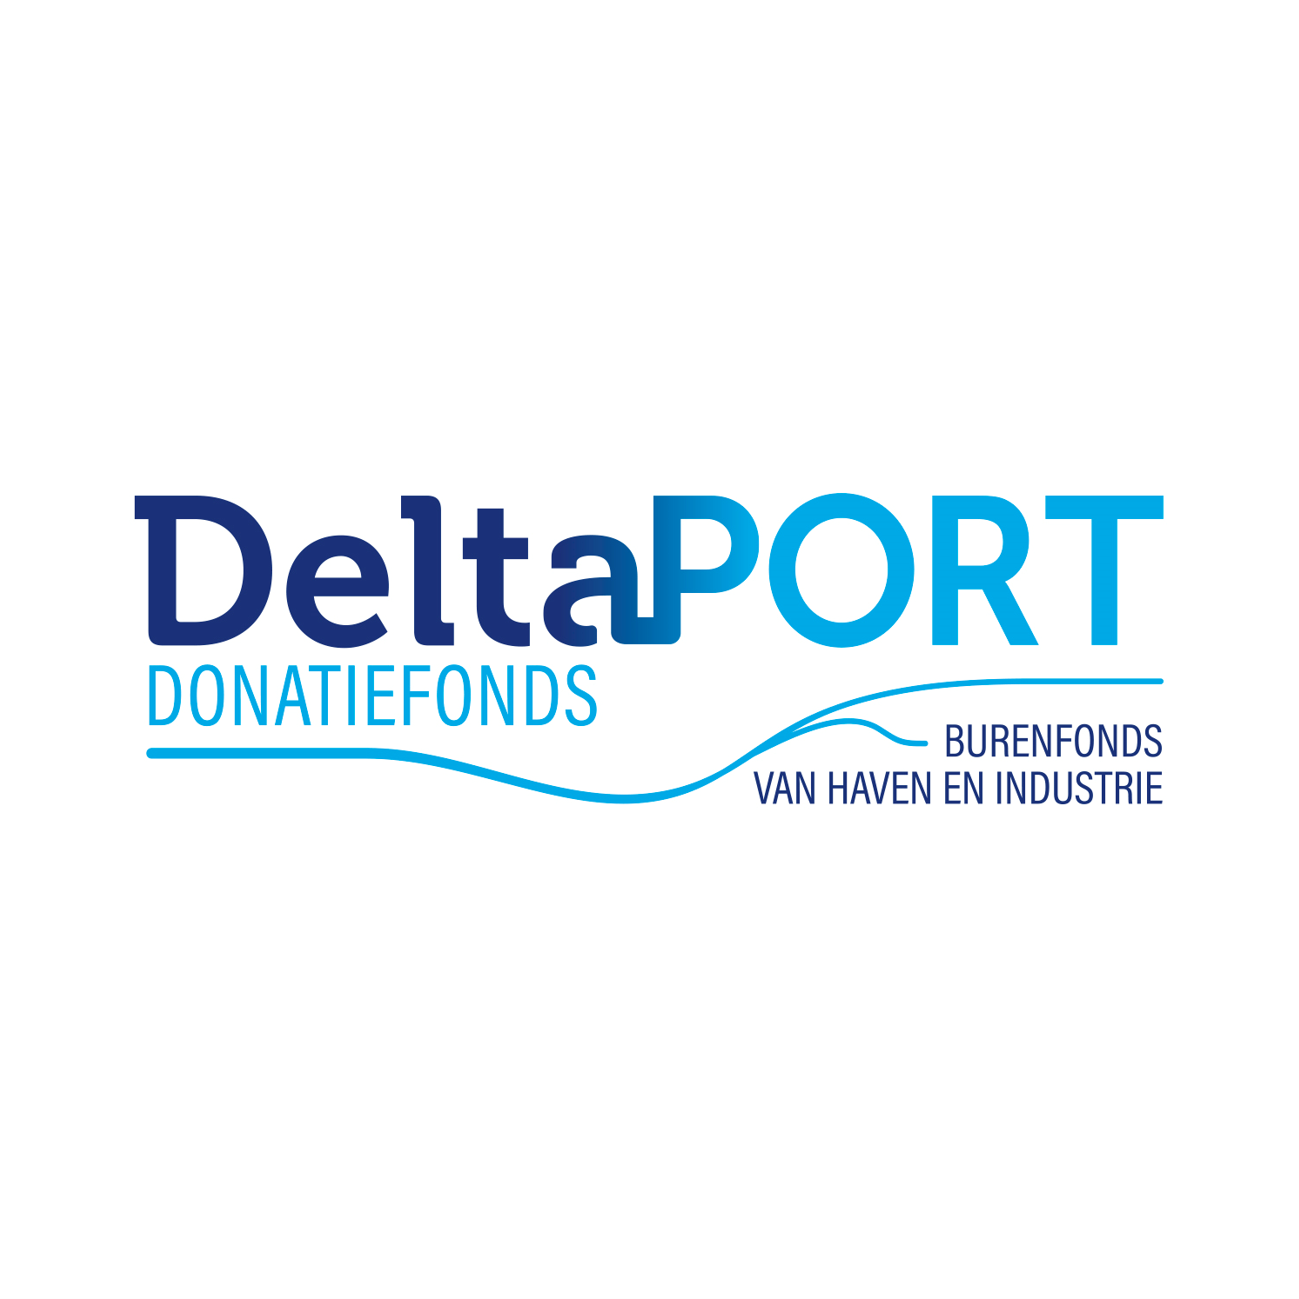 Deltaport Donatiefonds is Capabel